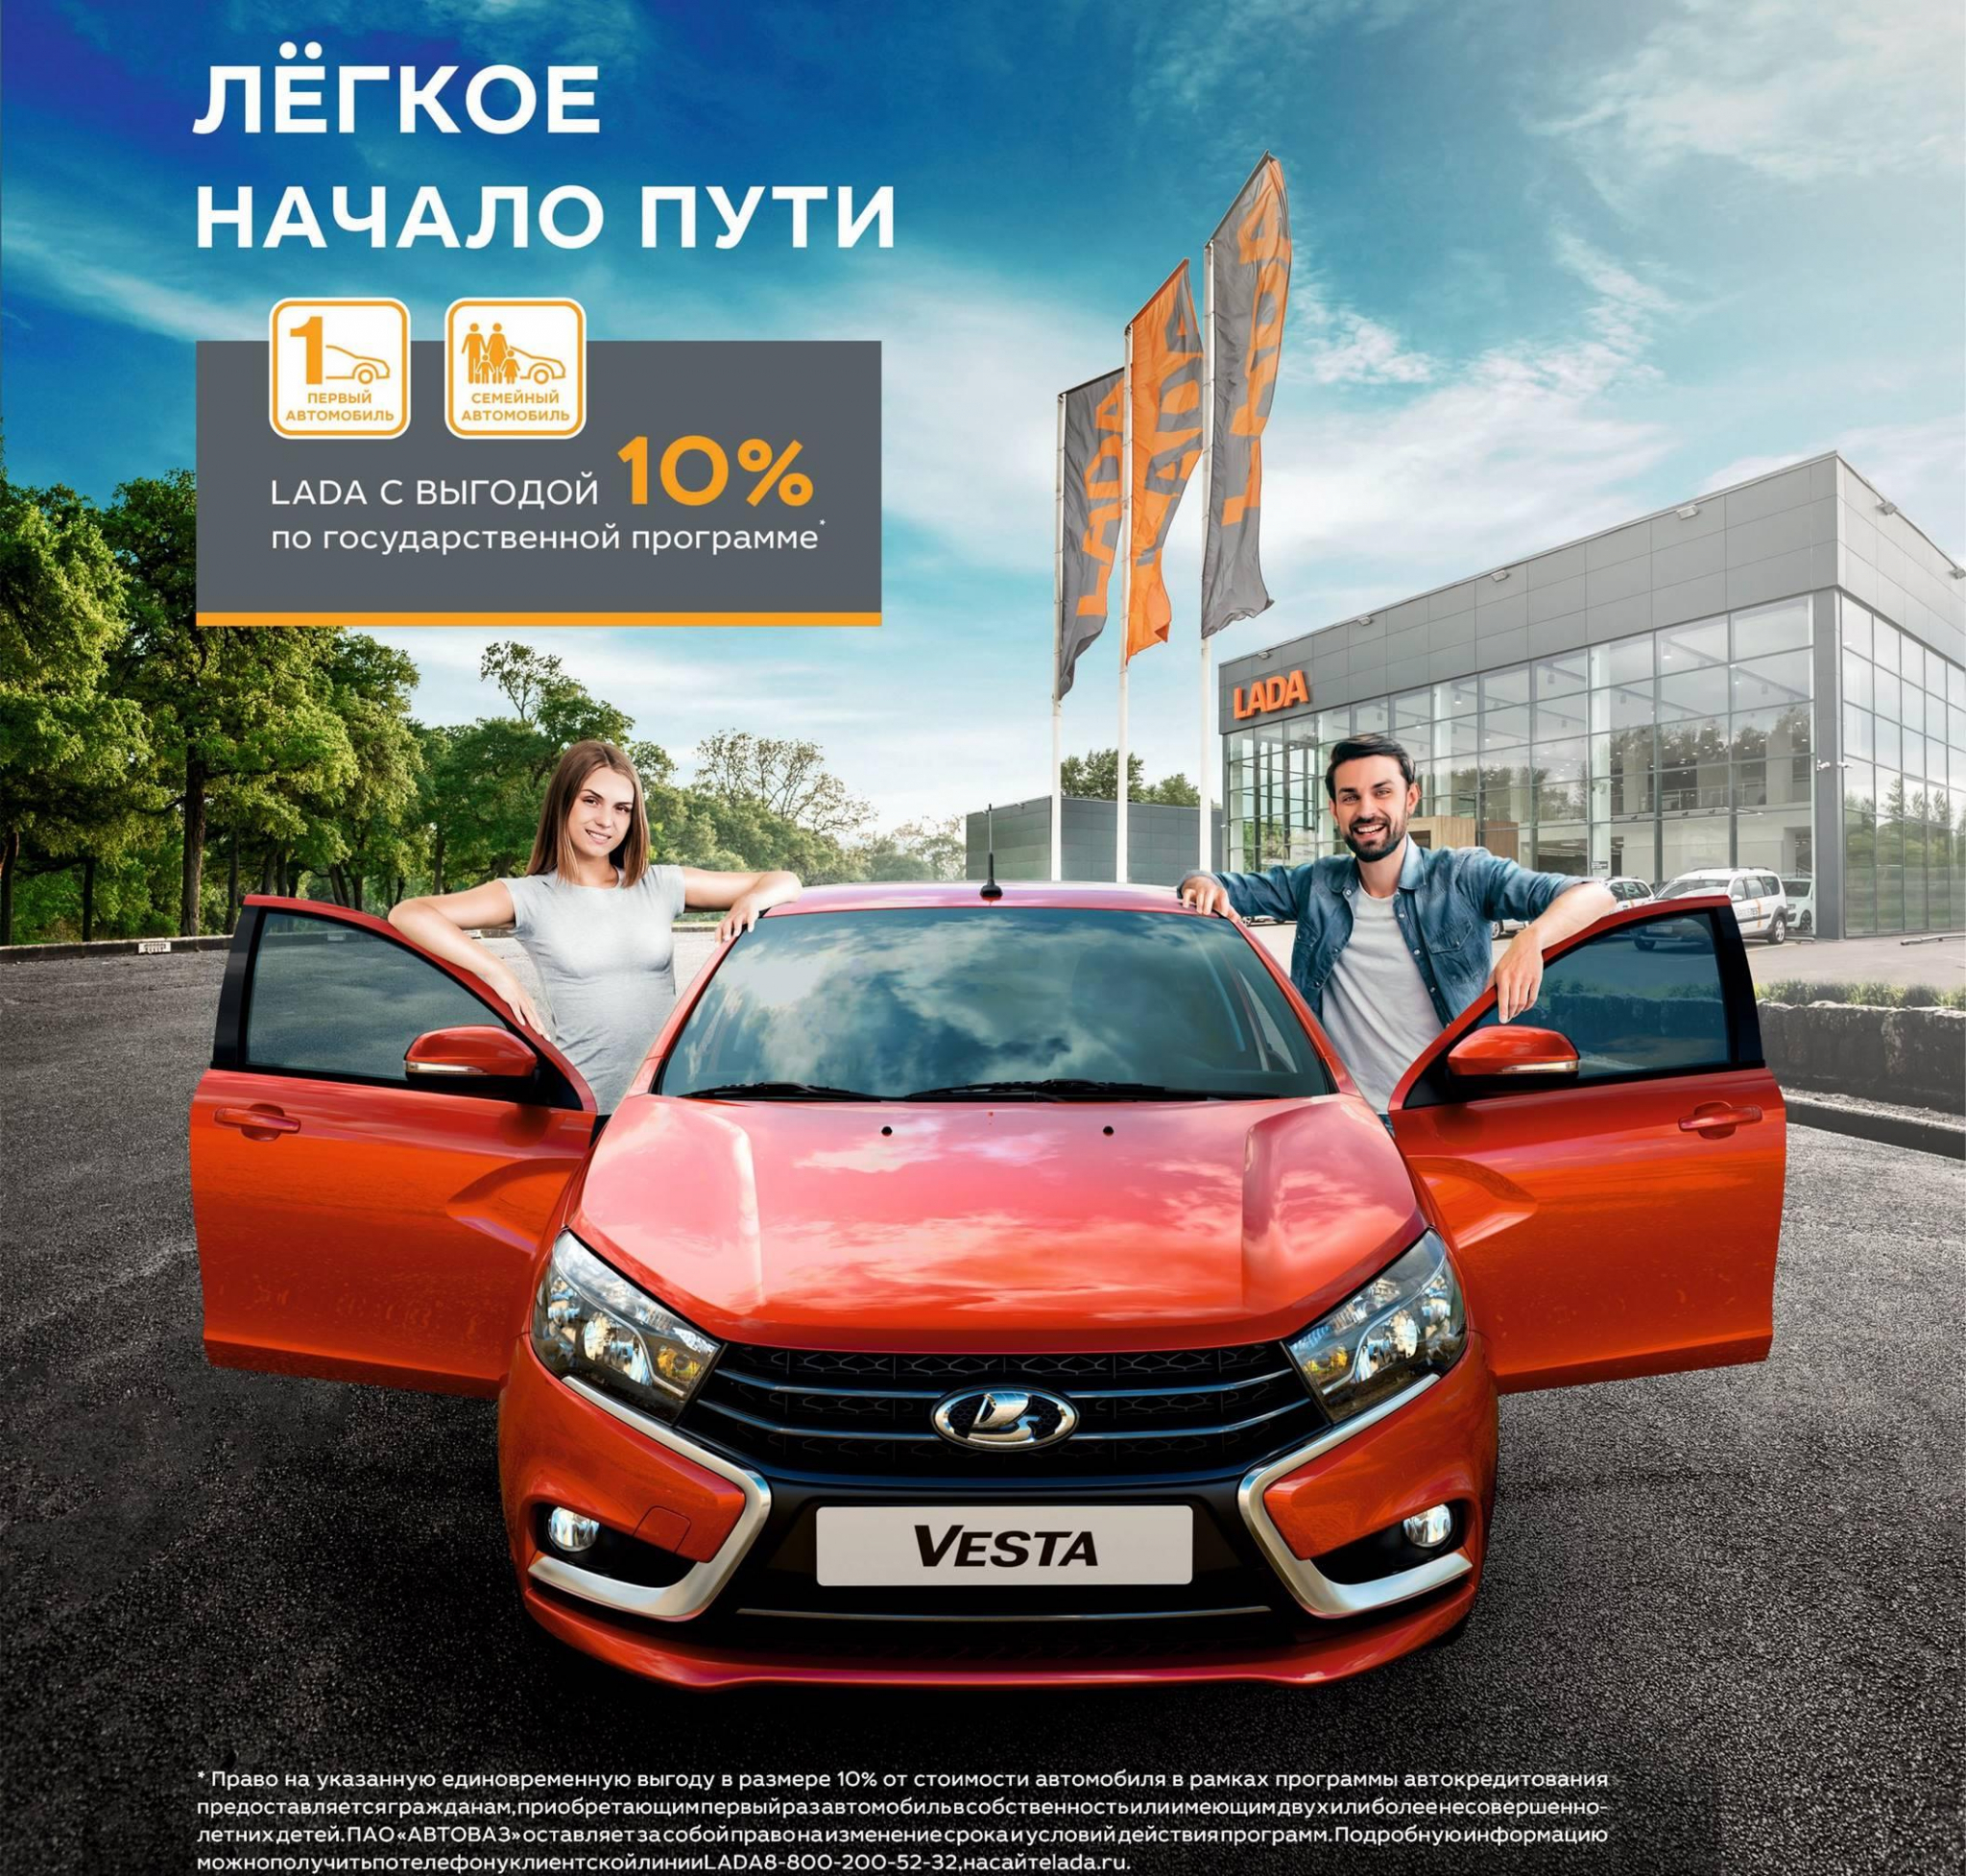 Теперь LADA еще доступнее в автосалоне Лада Центр Киров!